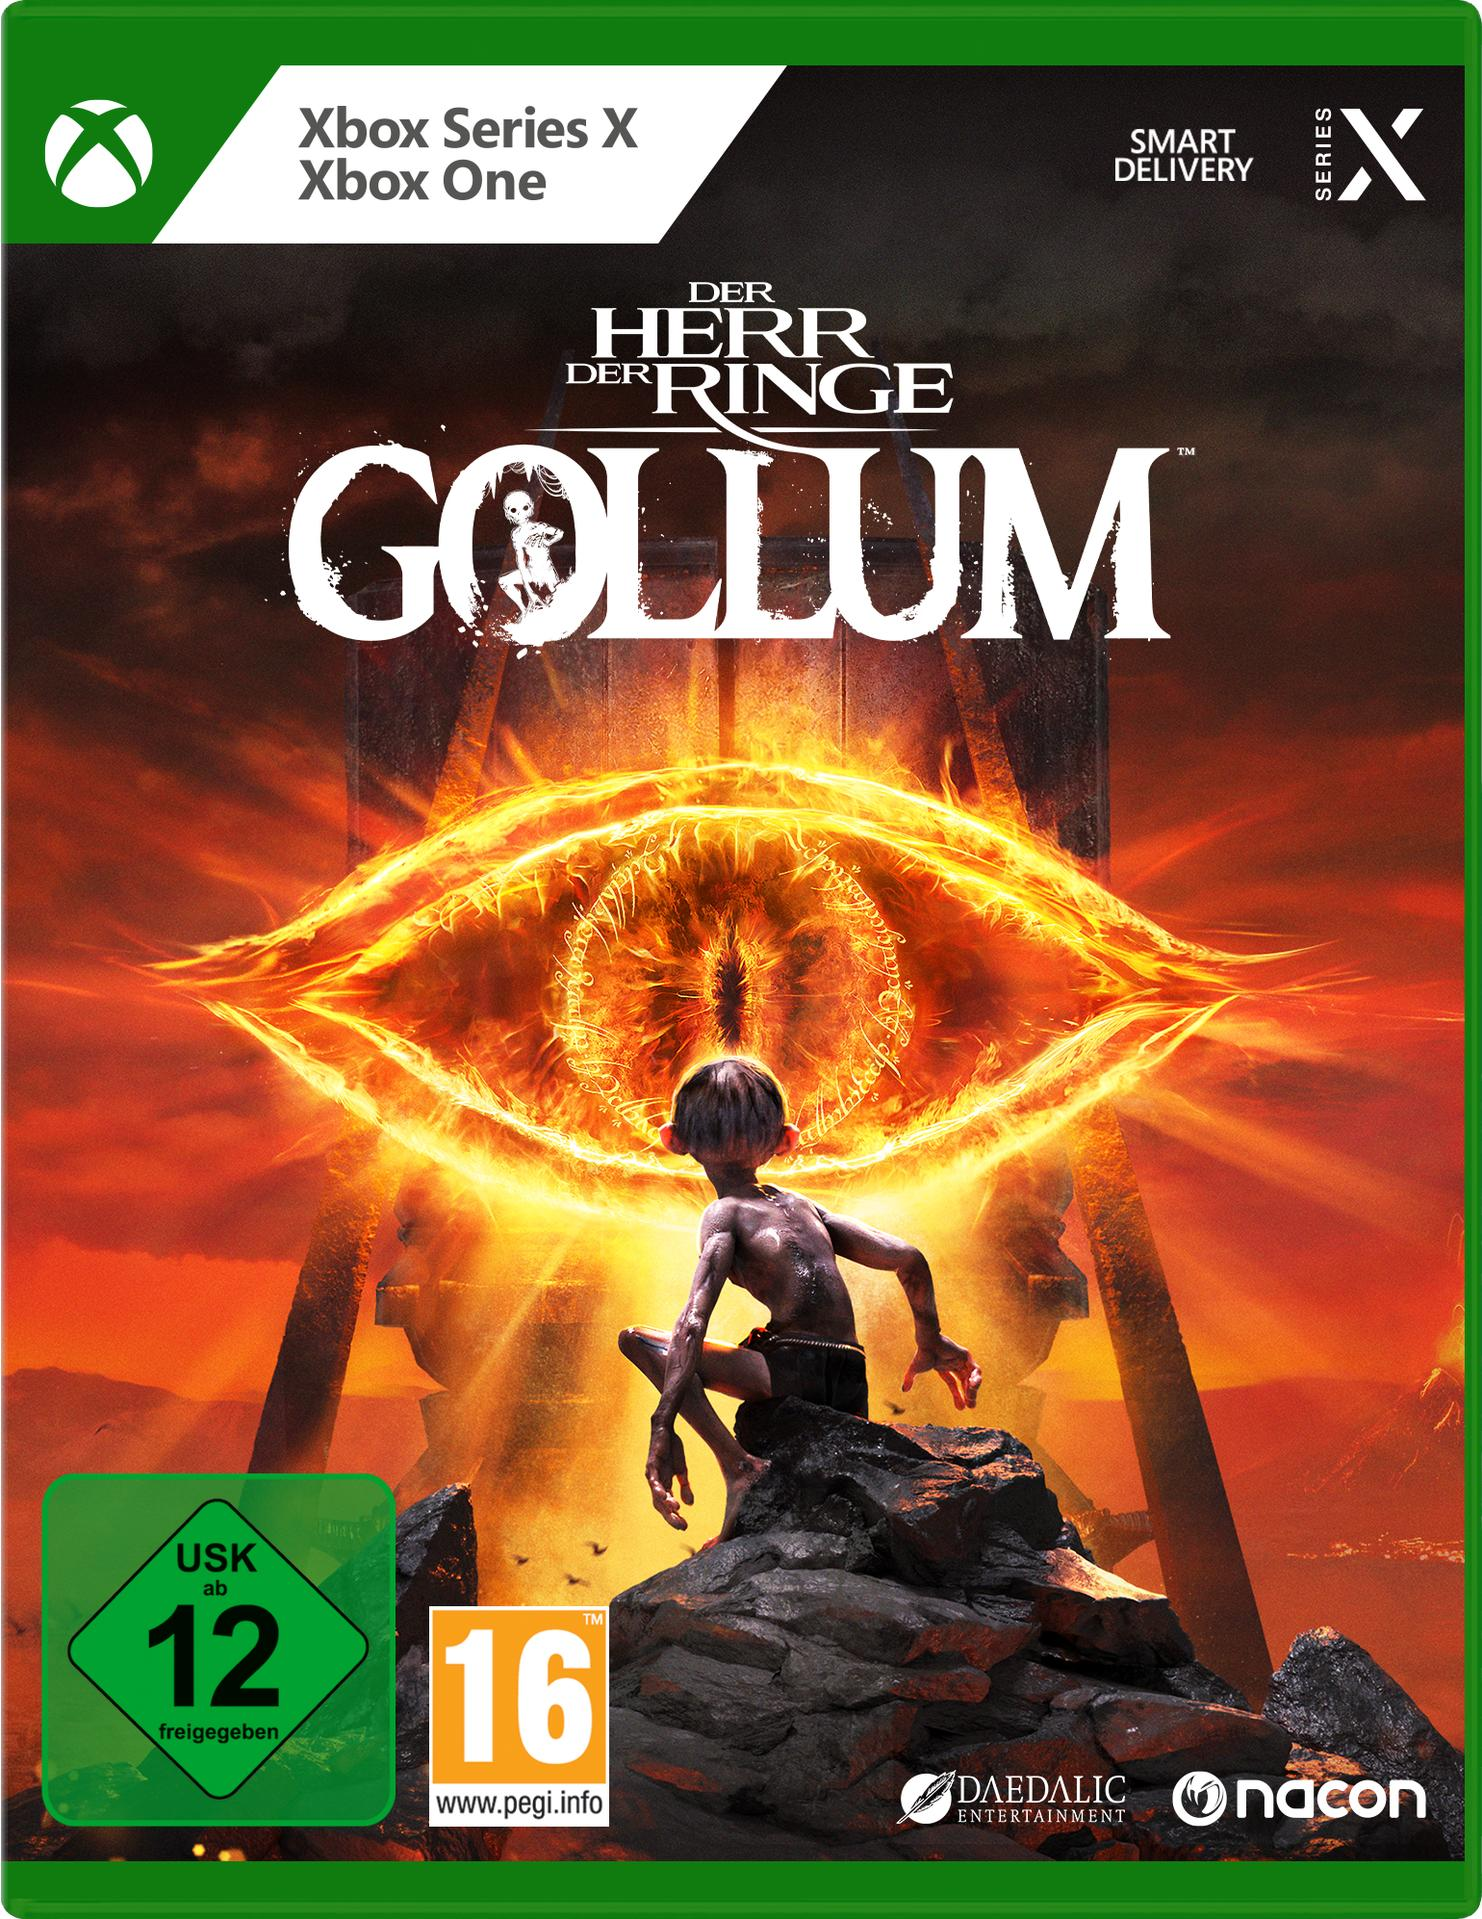 [Xbox Herr Ringe: Series & - X] Xbox Gollum der One Der